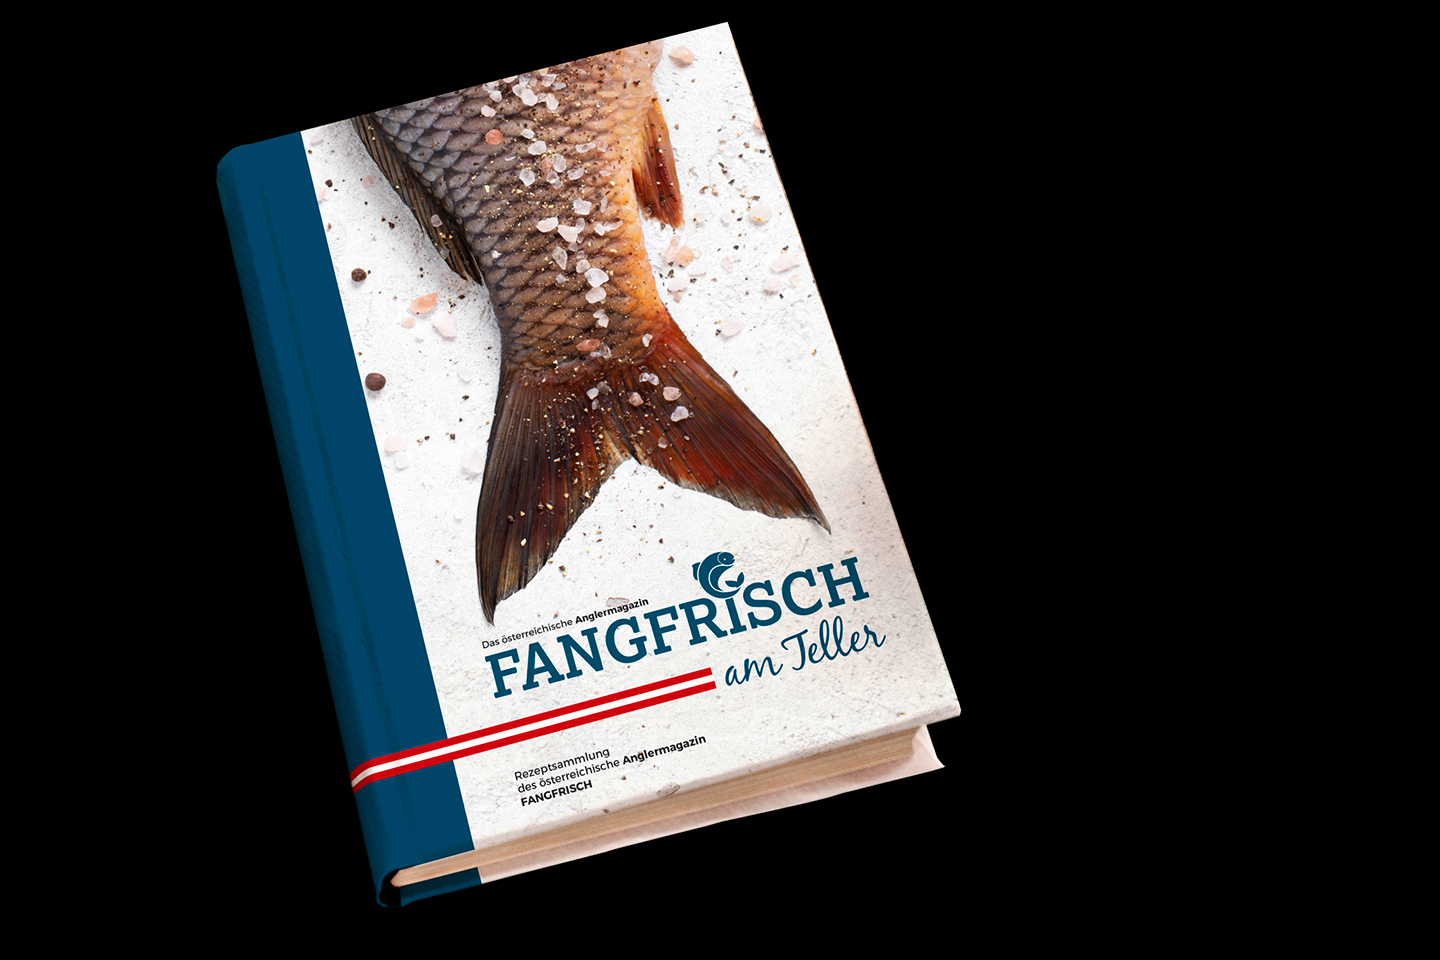 Fangfrisch_Buch_